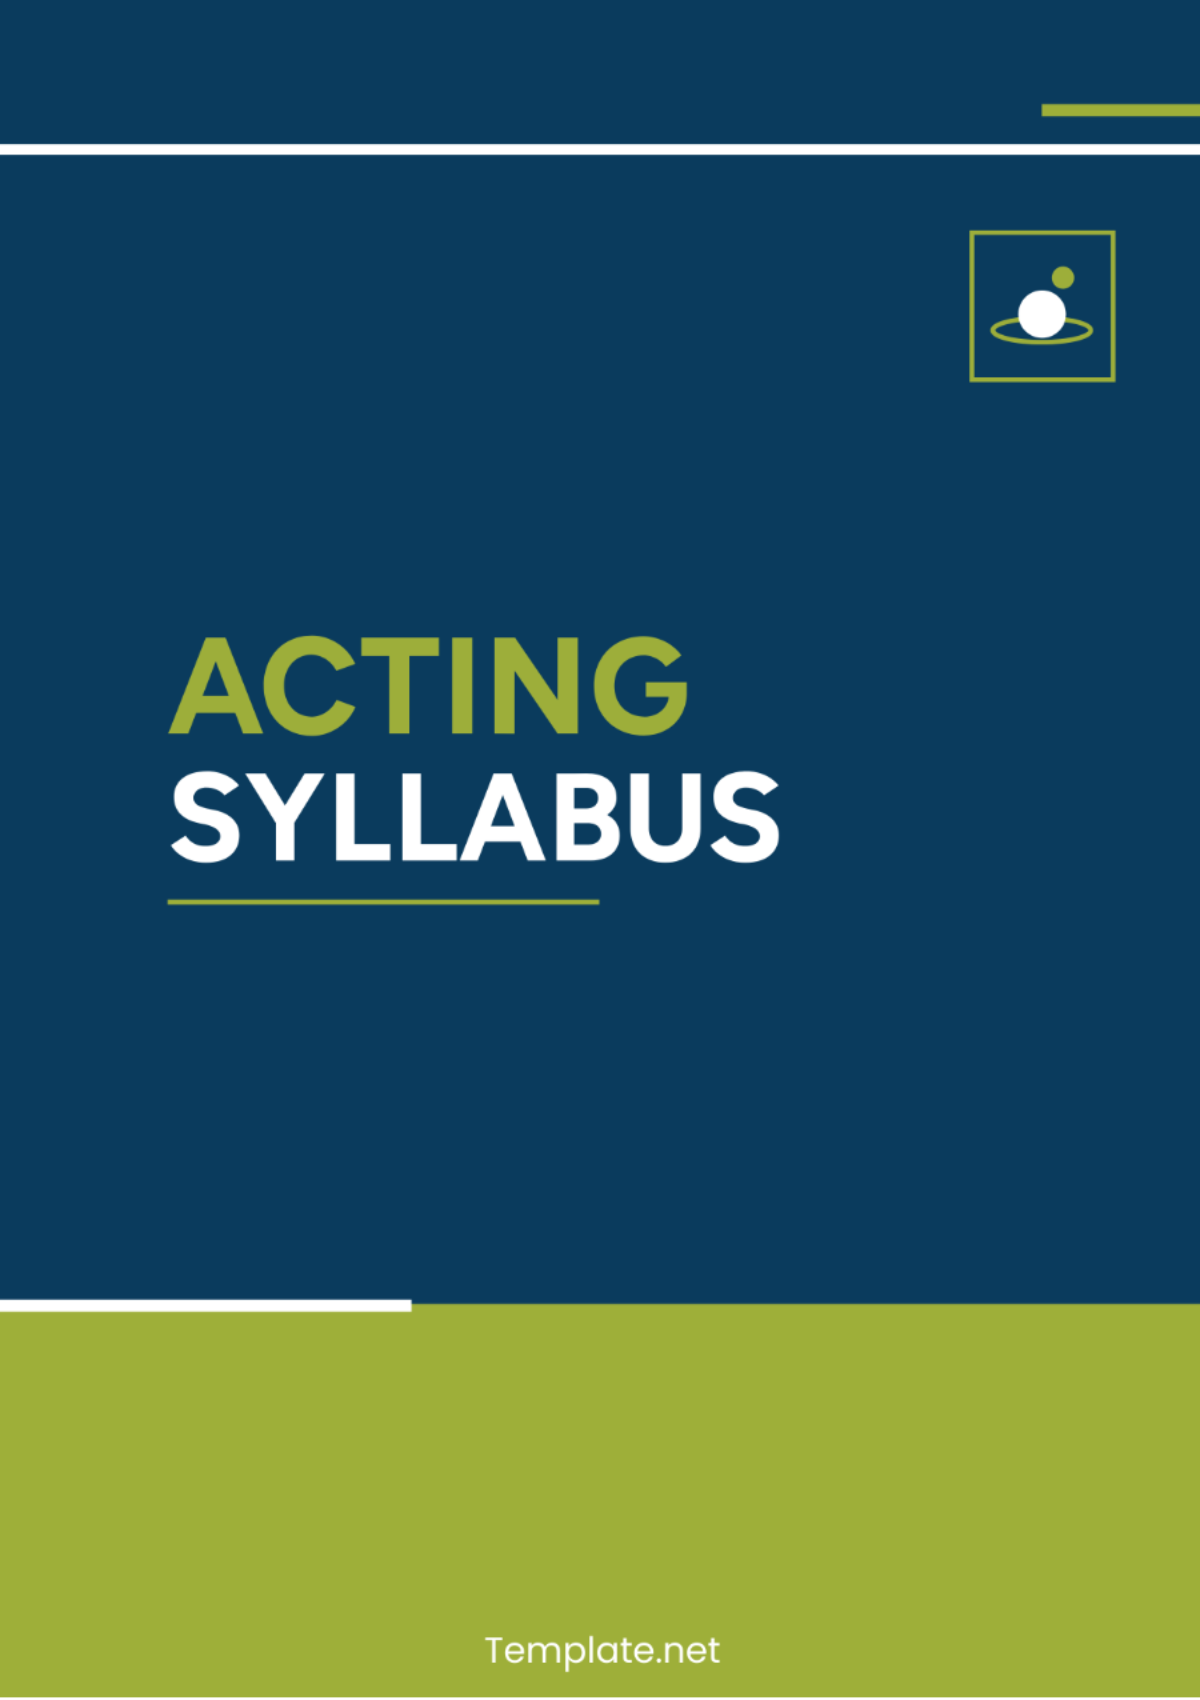 Acting Syllabus Template